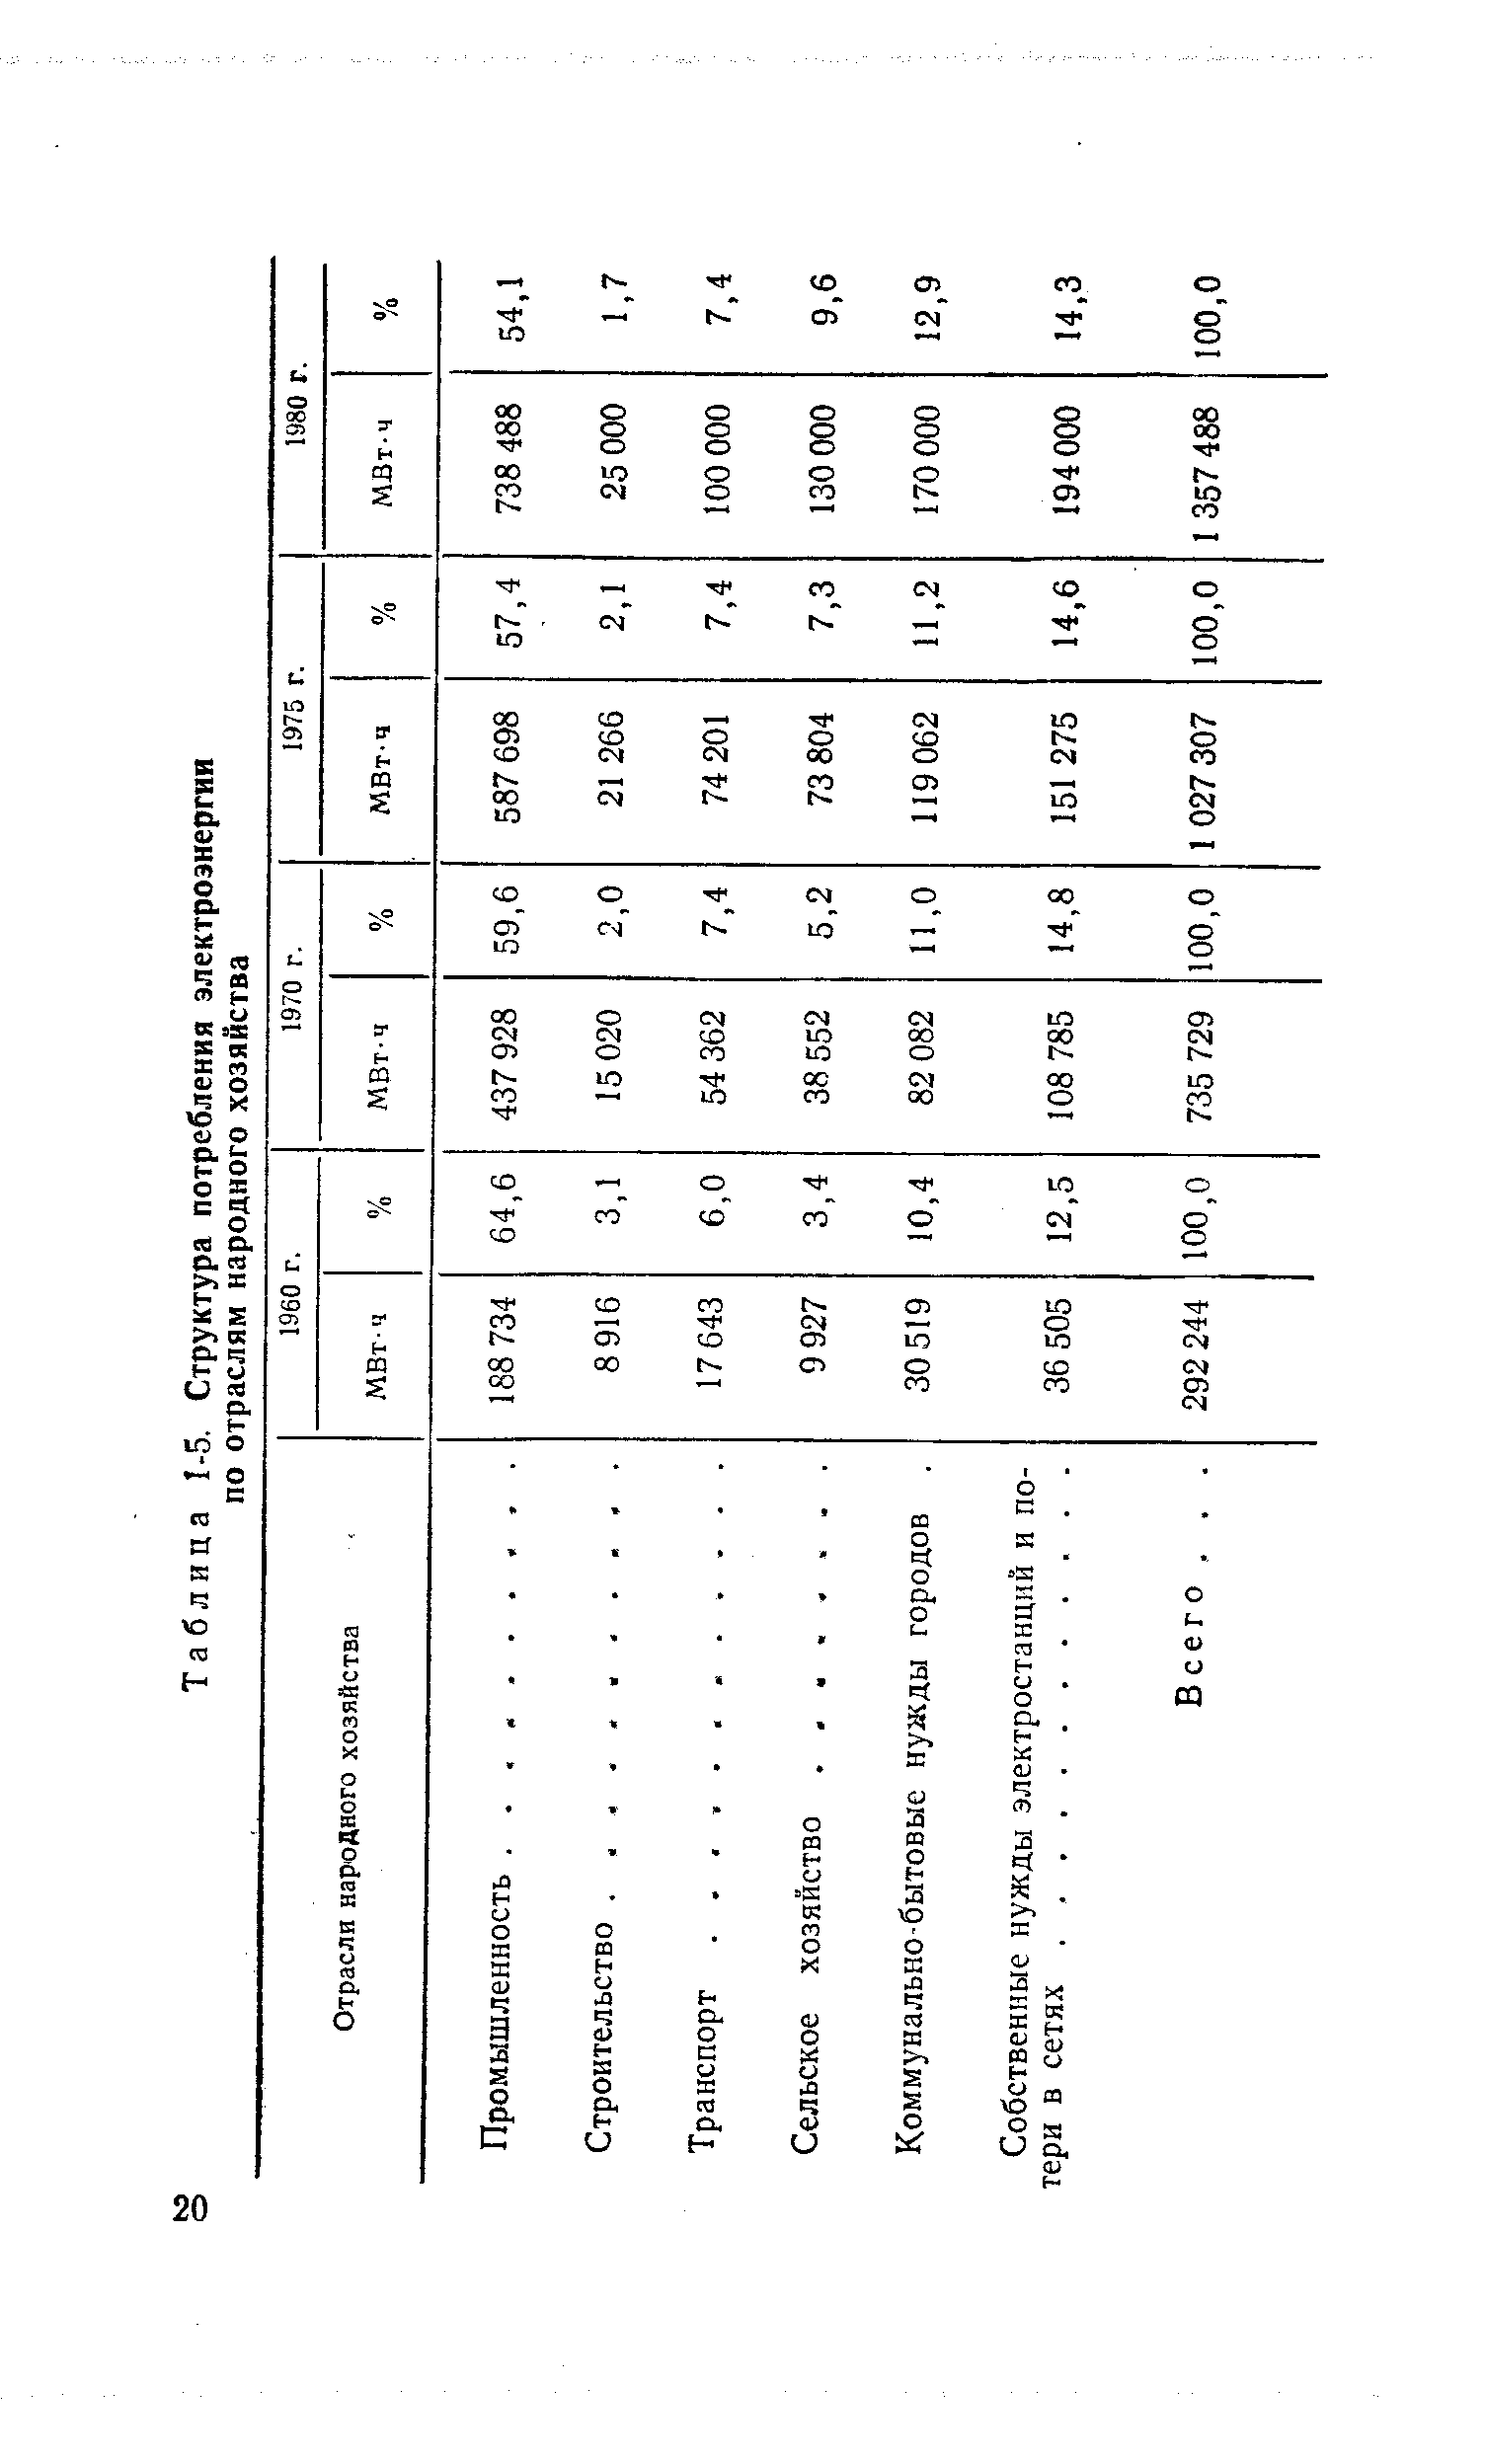 Таблица 1-5. Структура потребления электроэнергии по отраслям народного хозяйства
